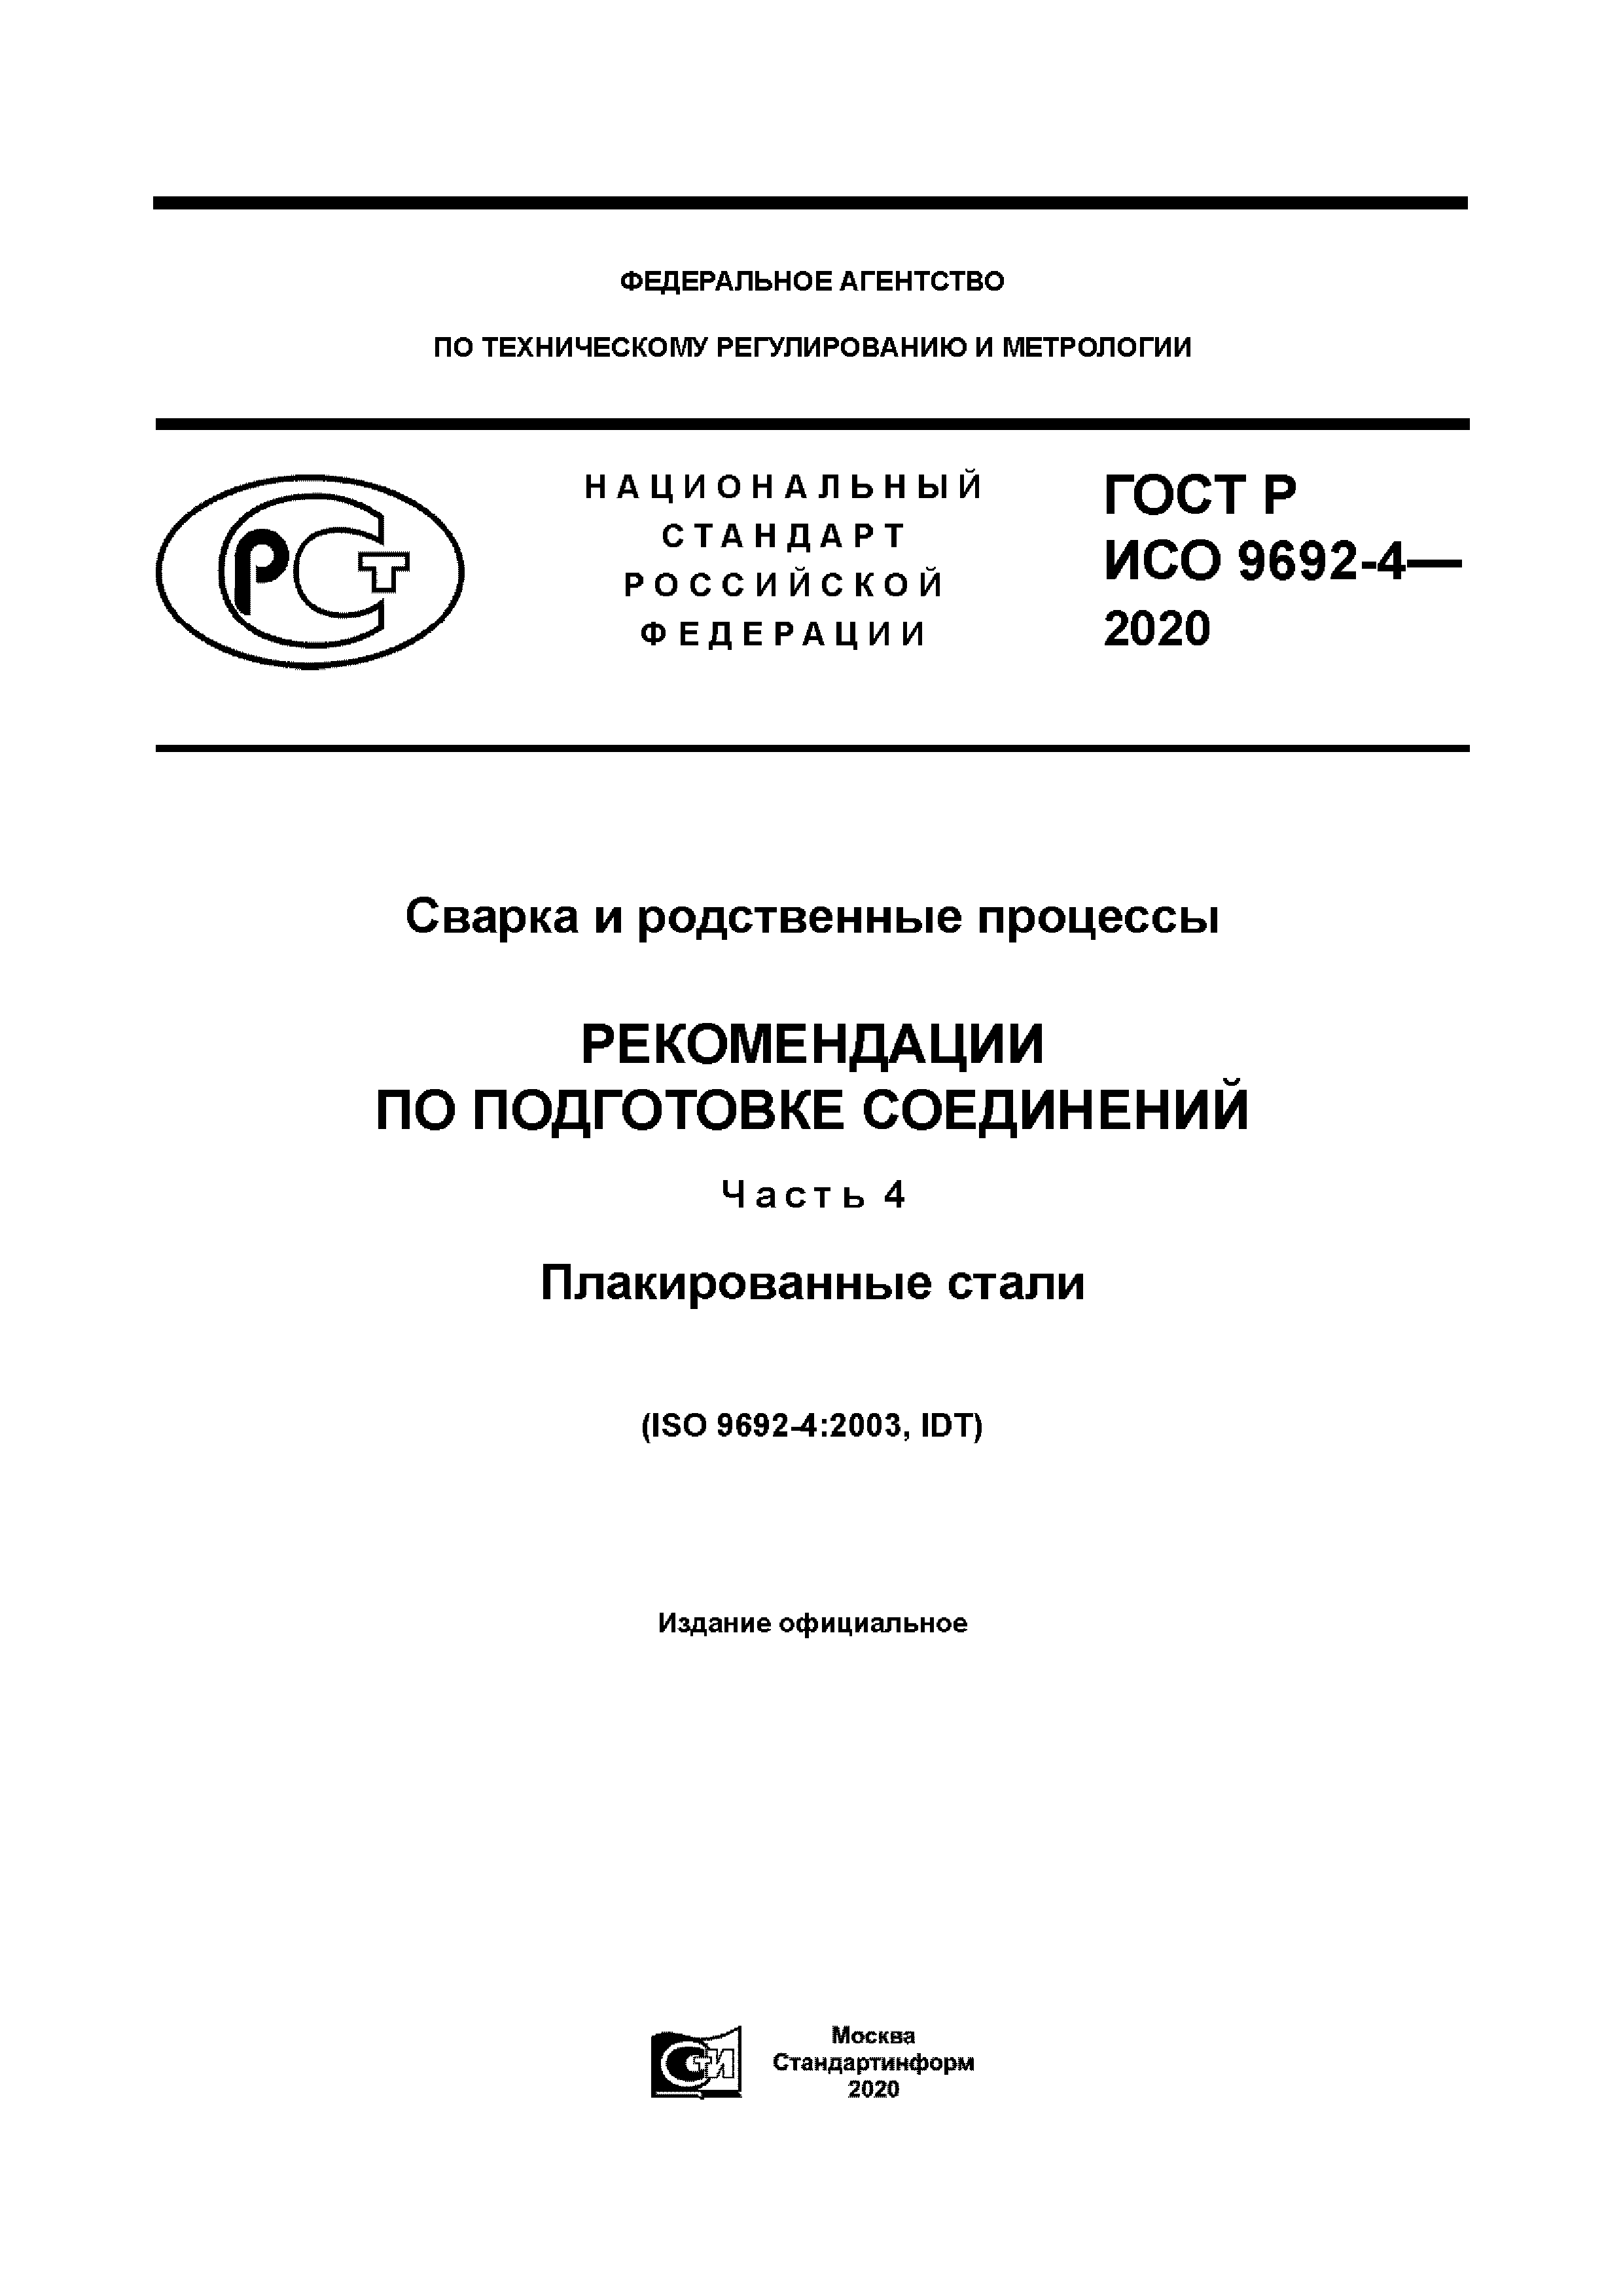 ГОСТ Р ИСО 9692-4-2020